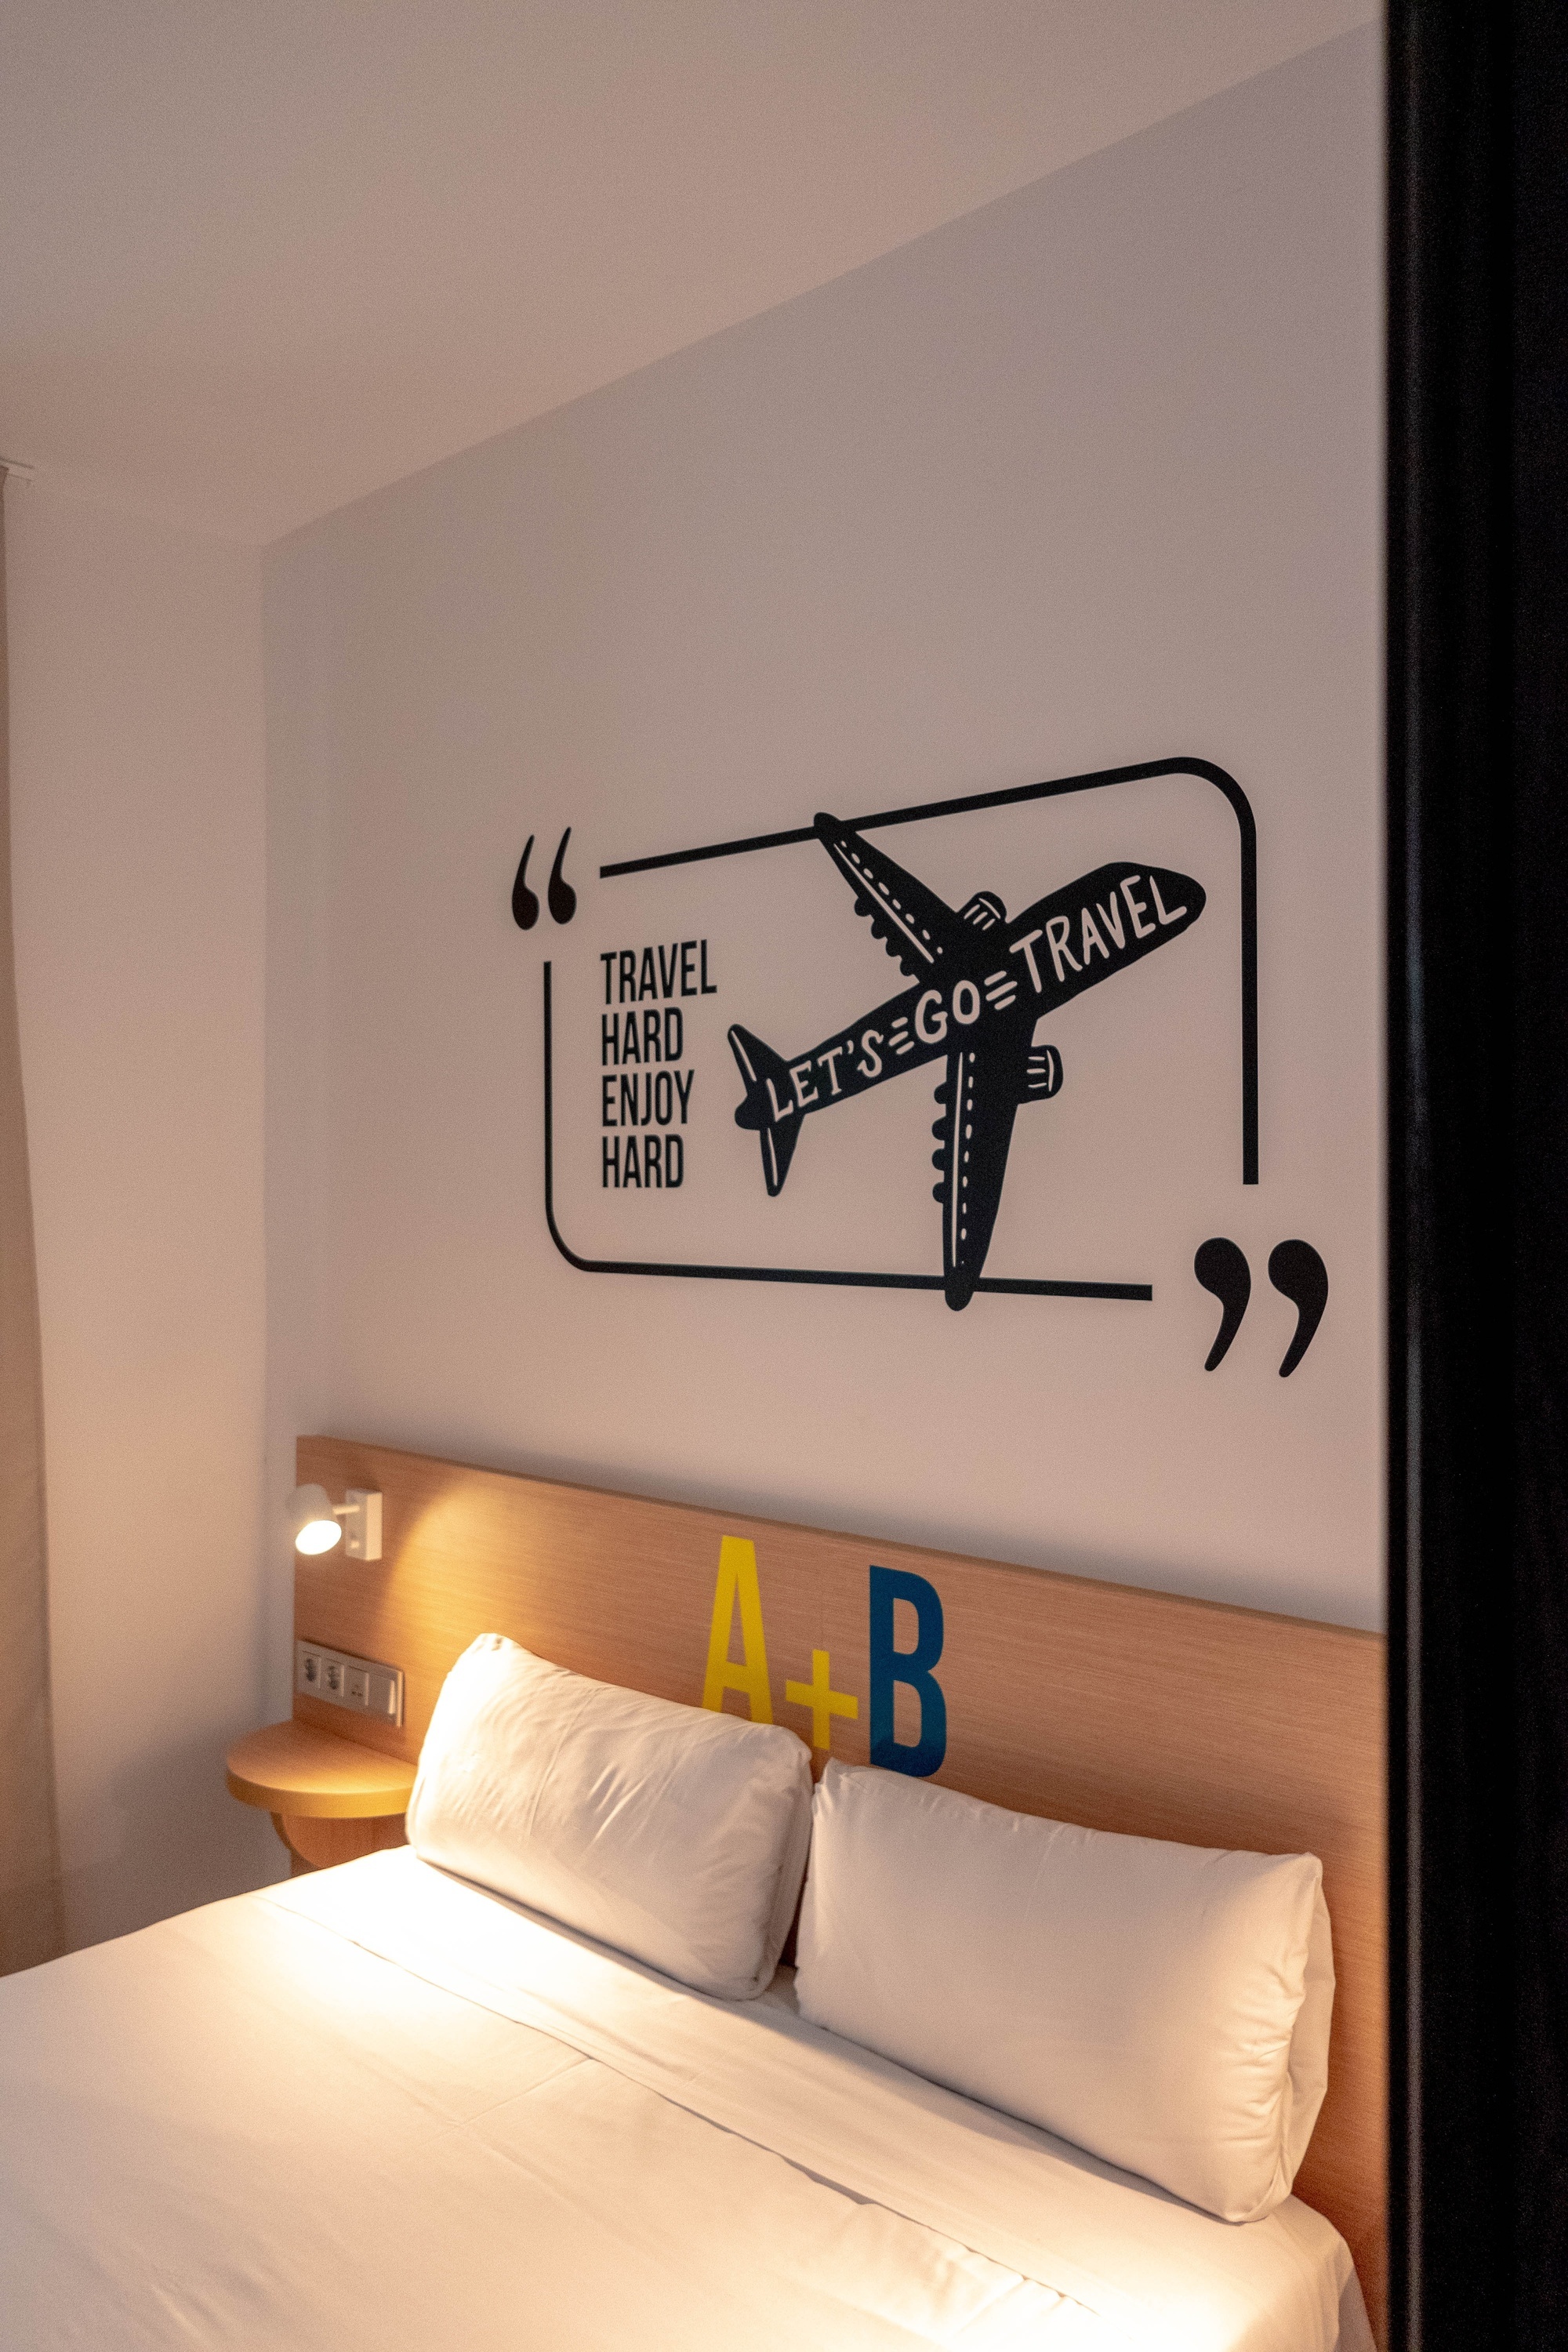 una habitación con una cama y un cartel en la pared que dice " viajar duro y ser feliz duro "